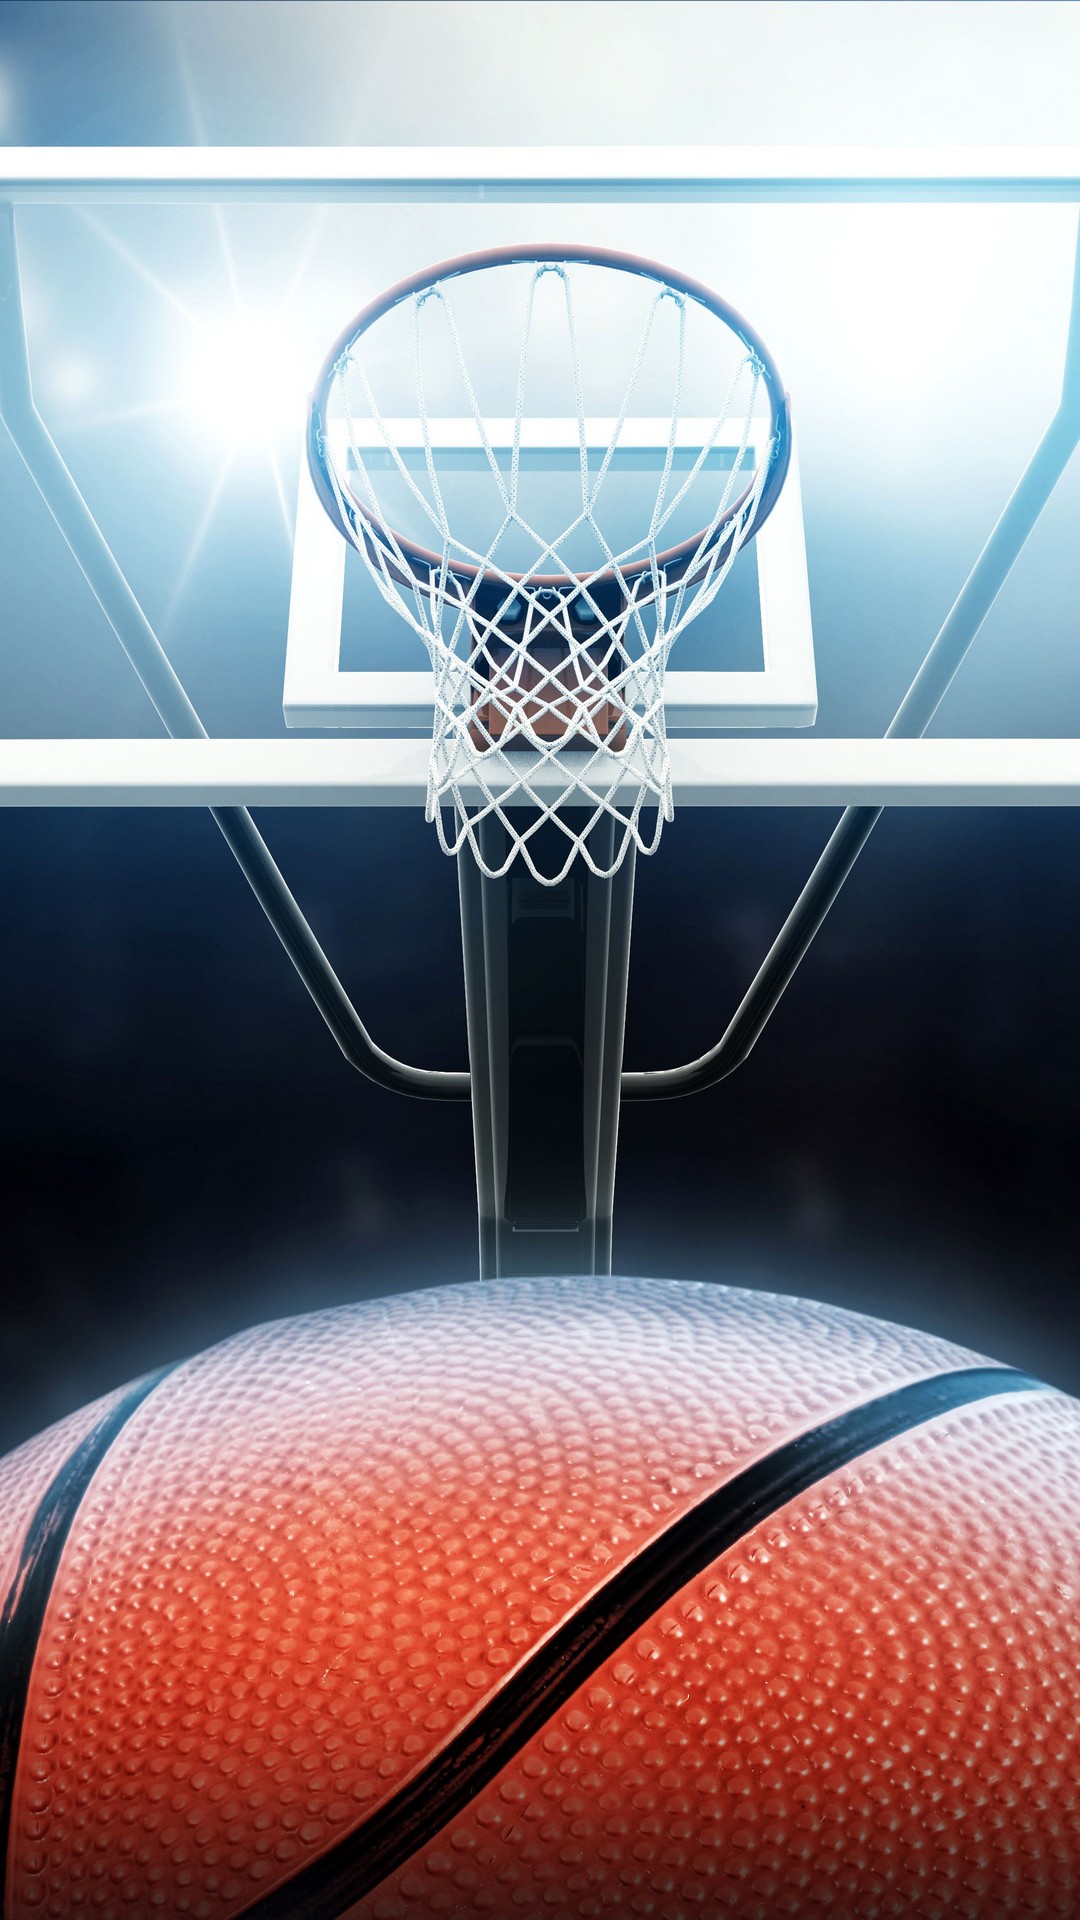 basketball wallpaper iphone,basketballkorb,basketball,netz,basketball platz,sportausrüstung